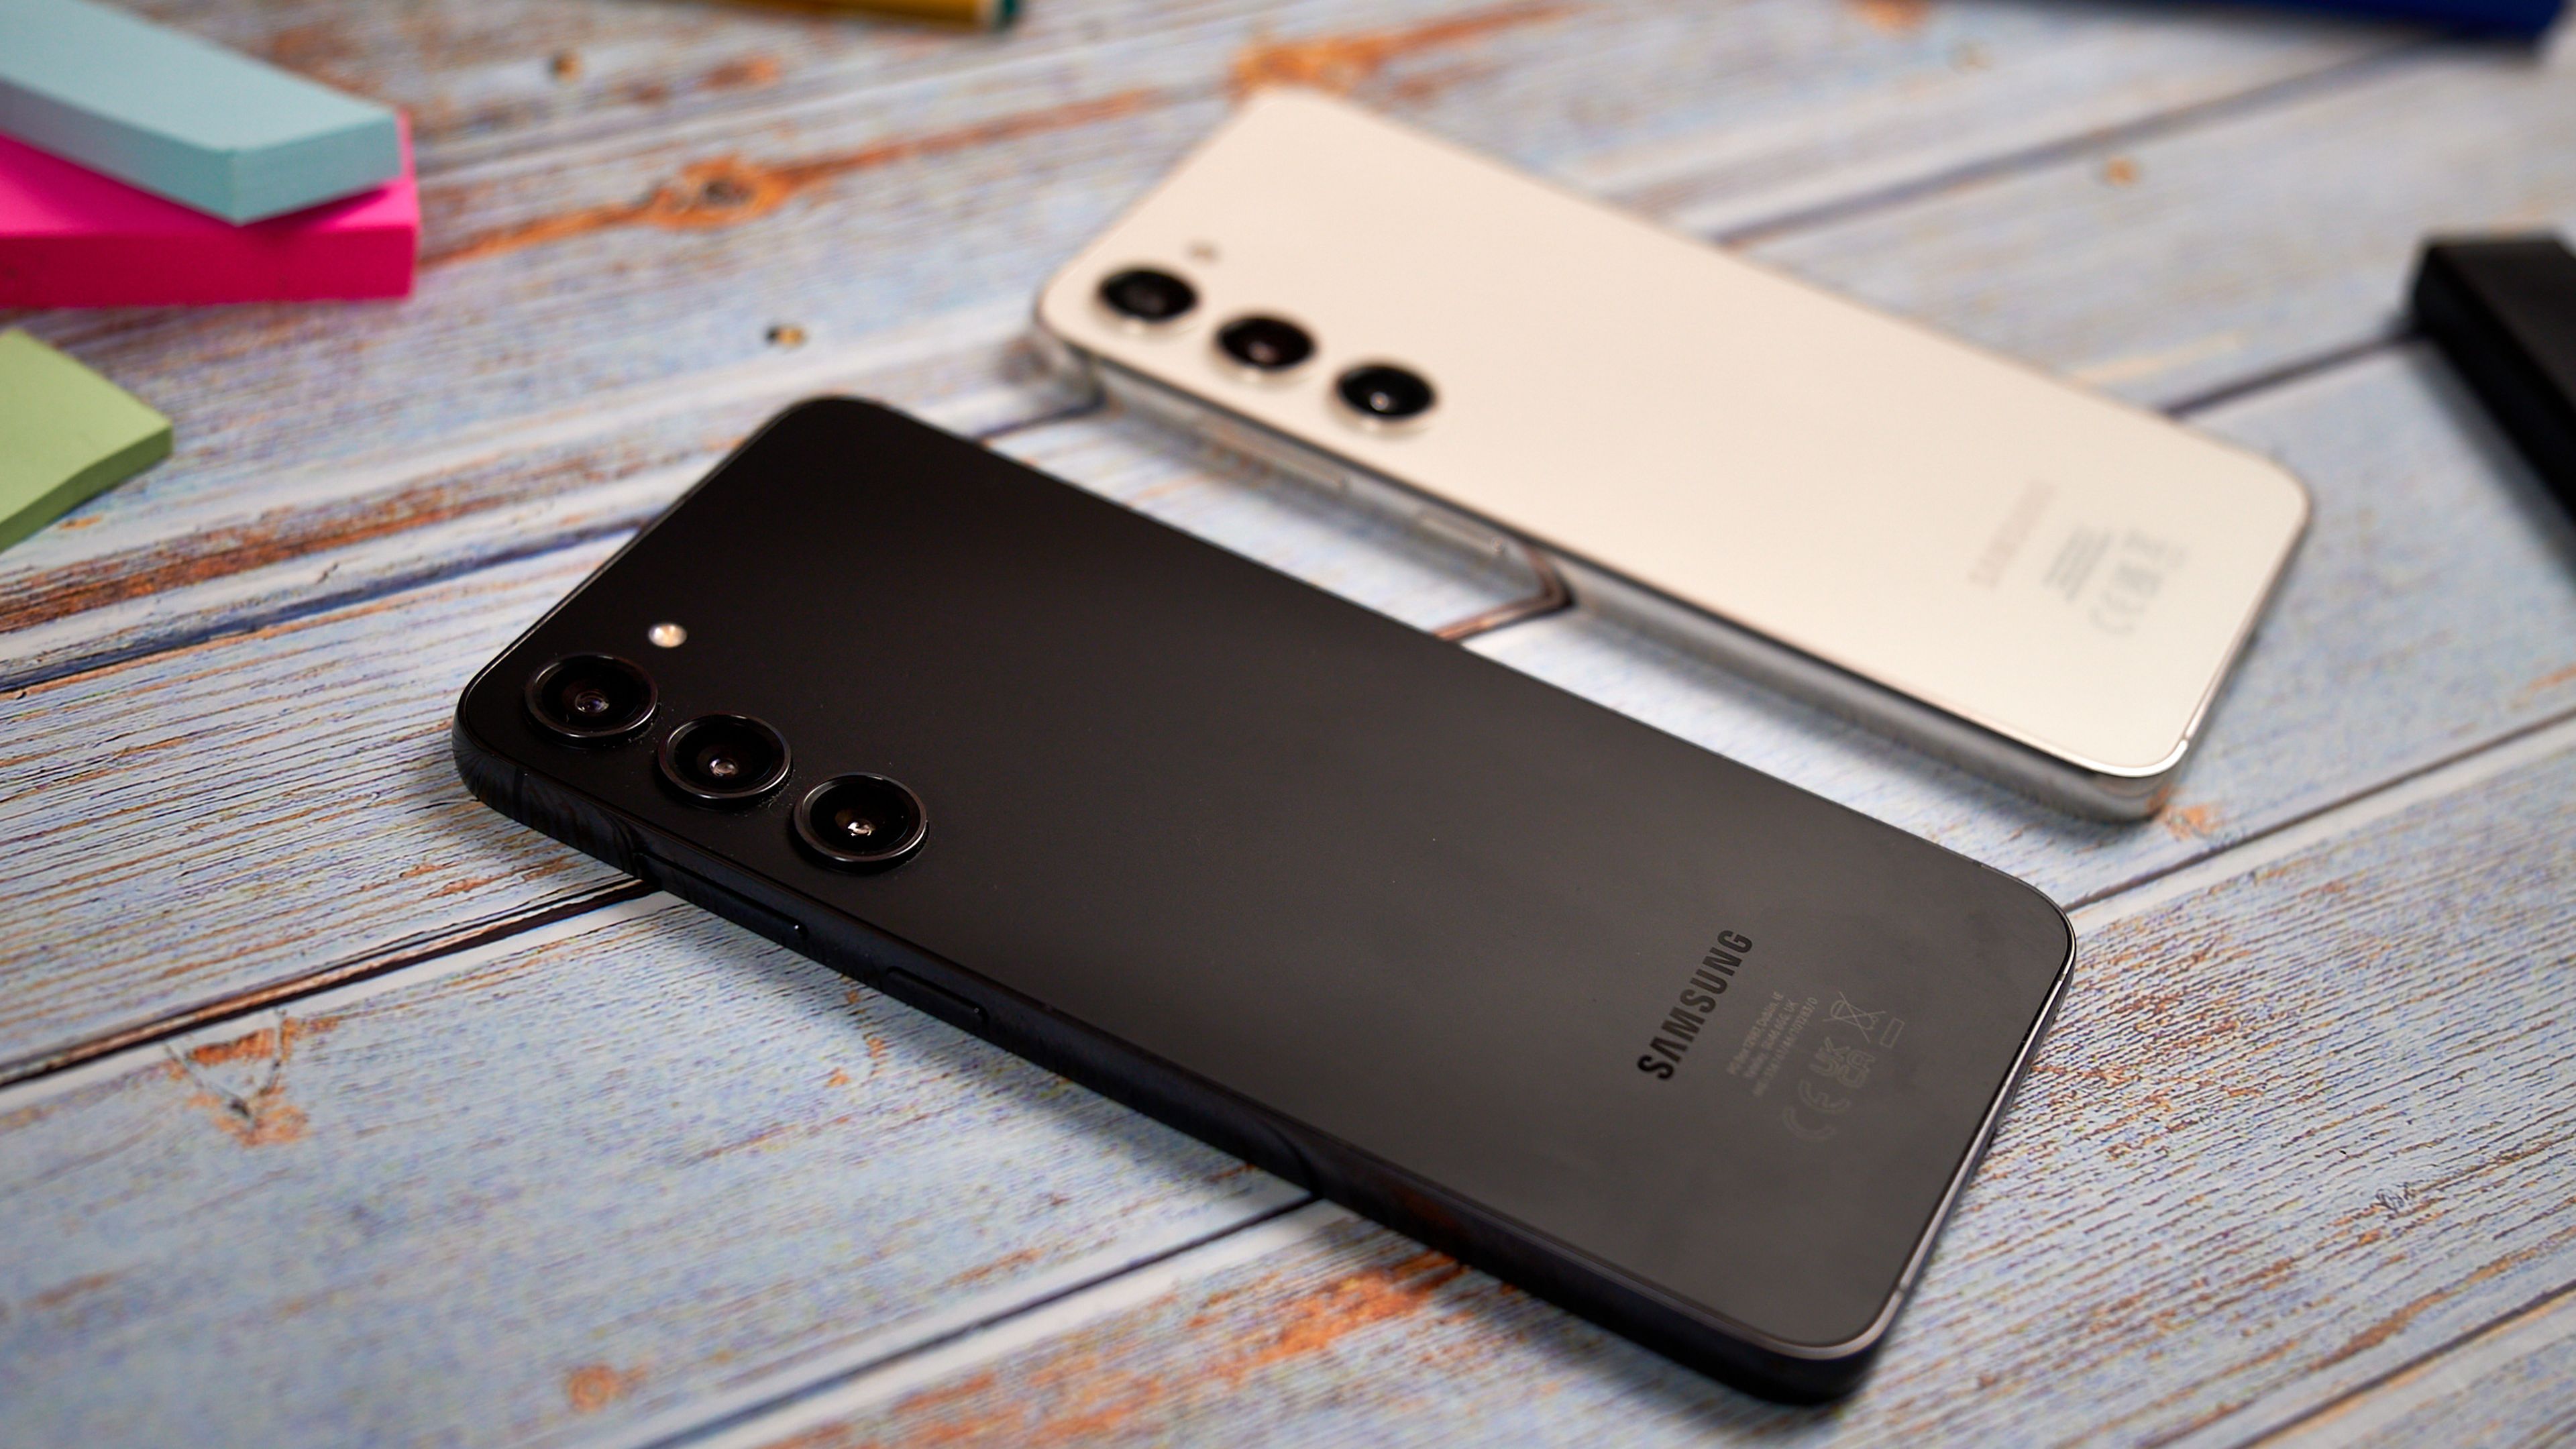 Samsung Galaxy S23 y Galaxy S23+, análisis y opinión